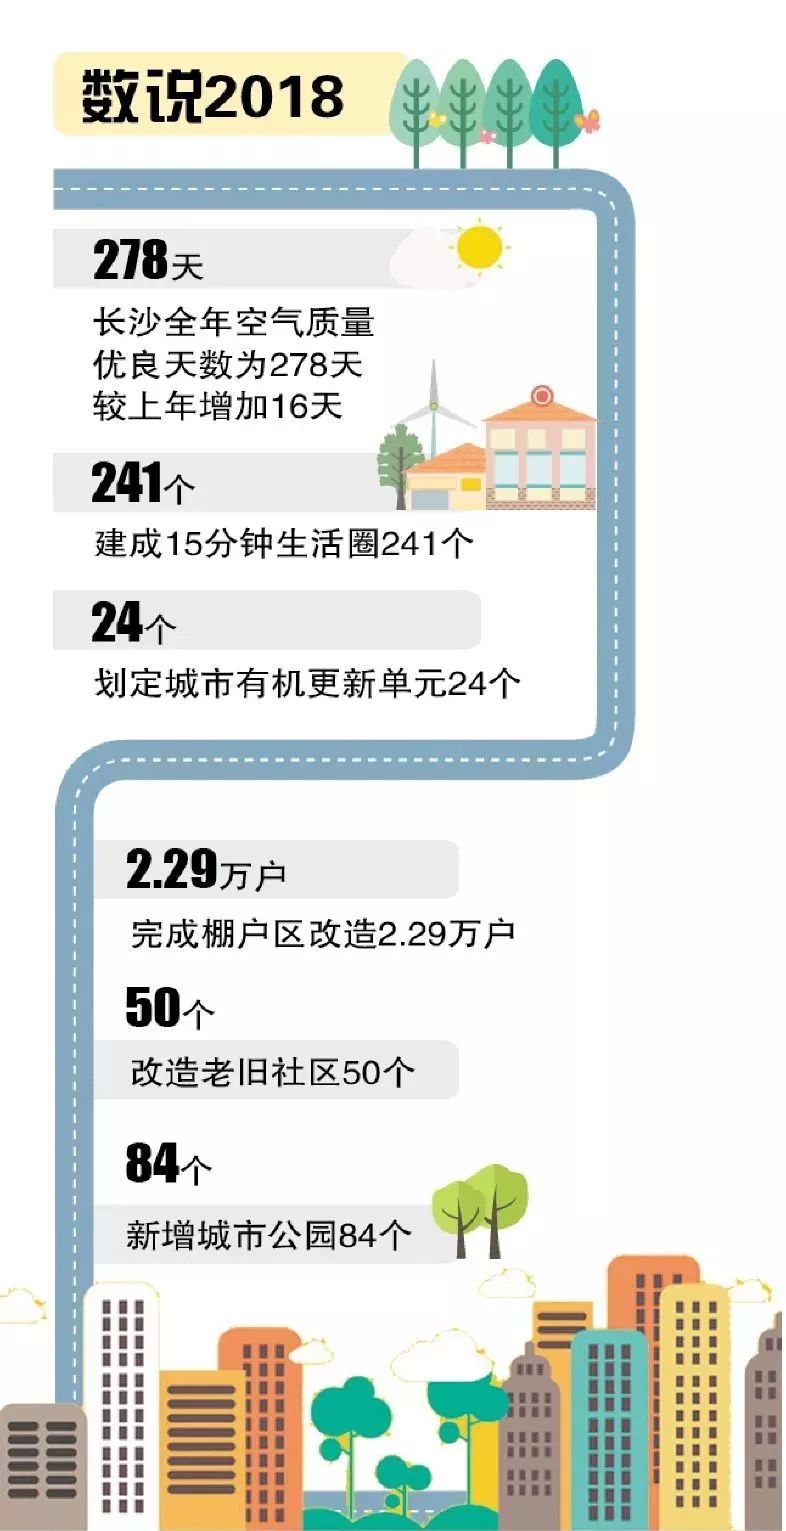 2018年,长沙城市精明增长 幸福指数升级